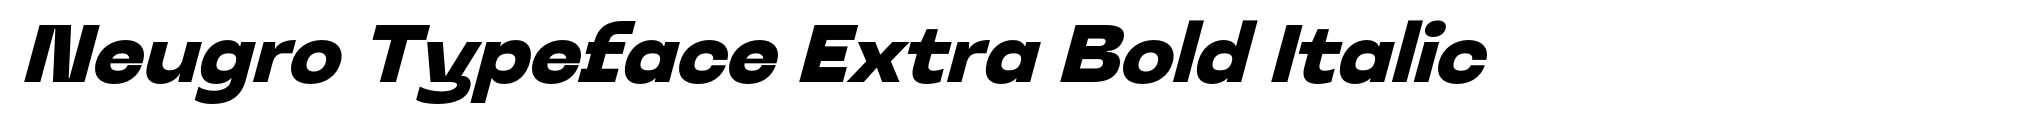 Neugro Typeface Extra Bold Italic image